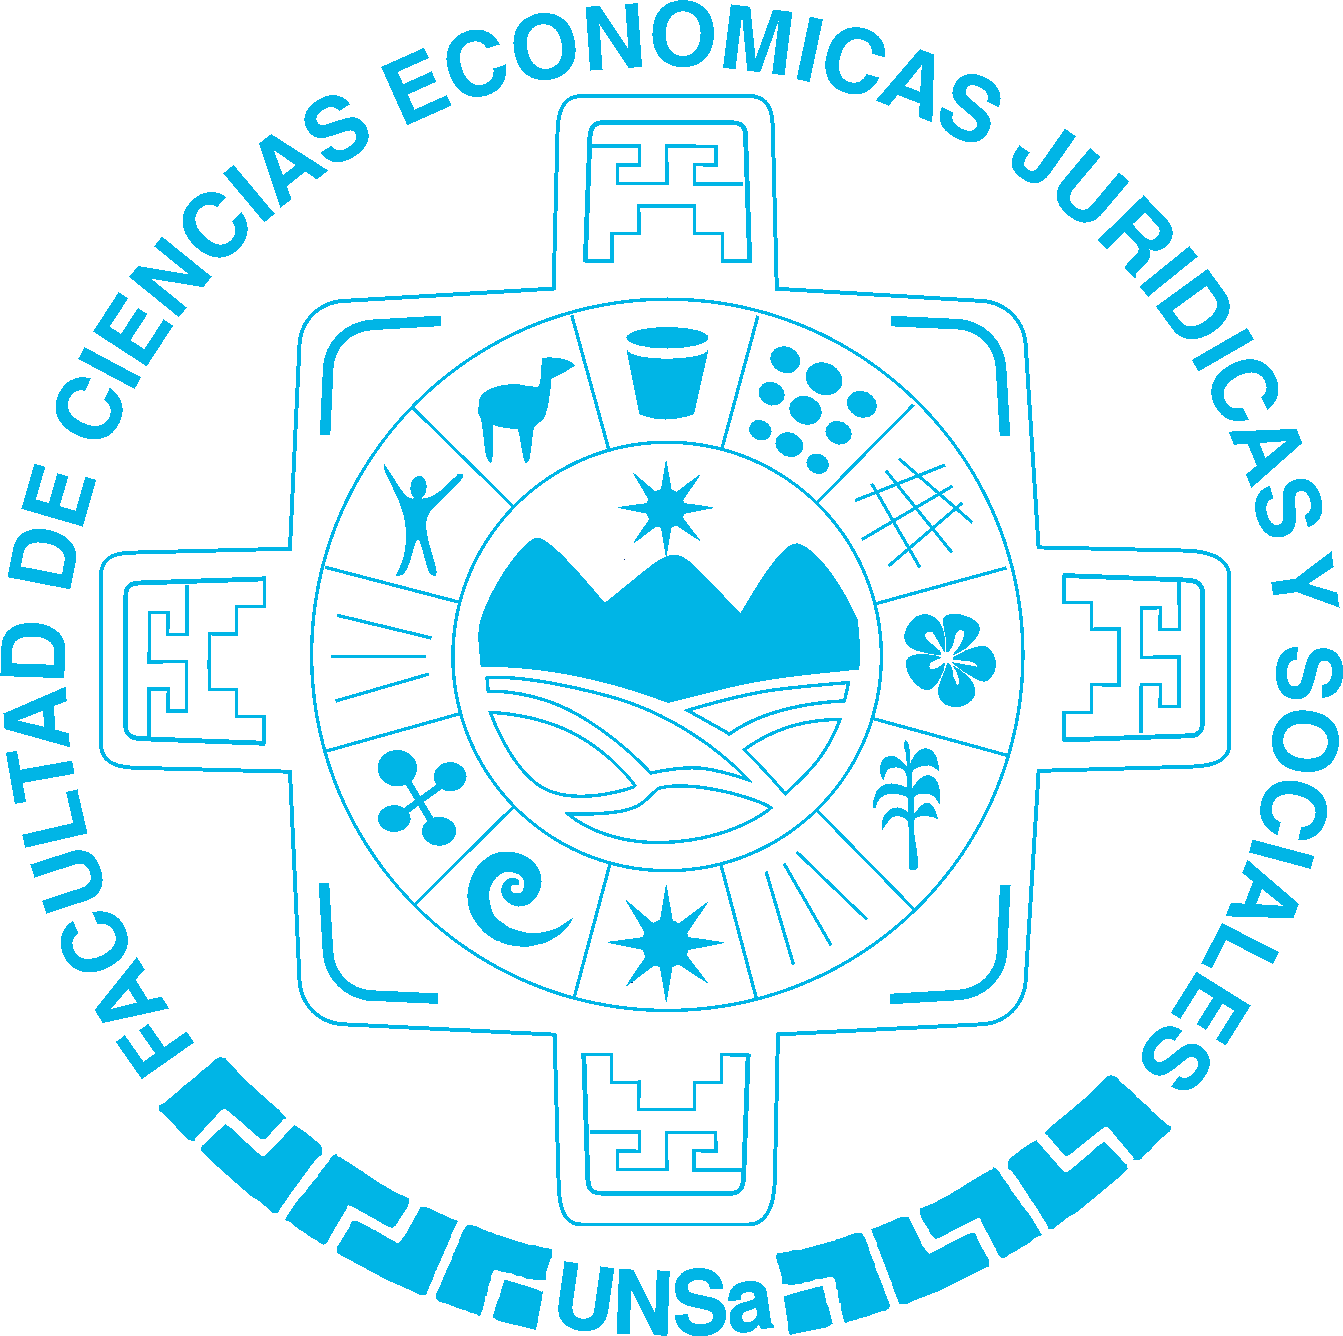 Logotipo del repositorio